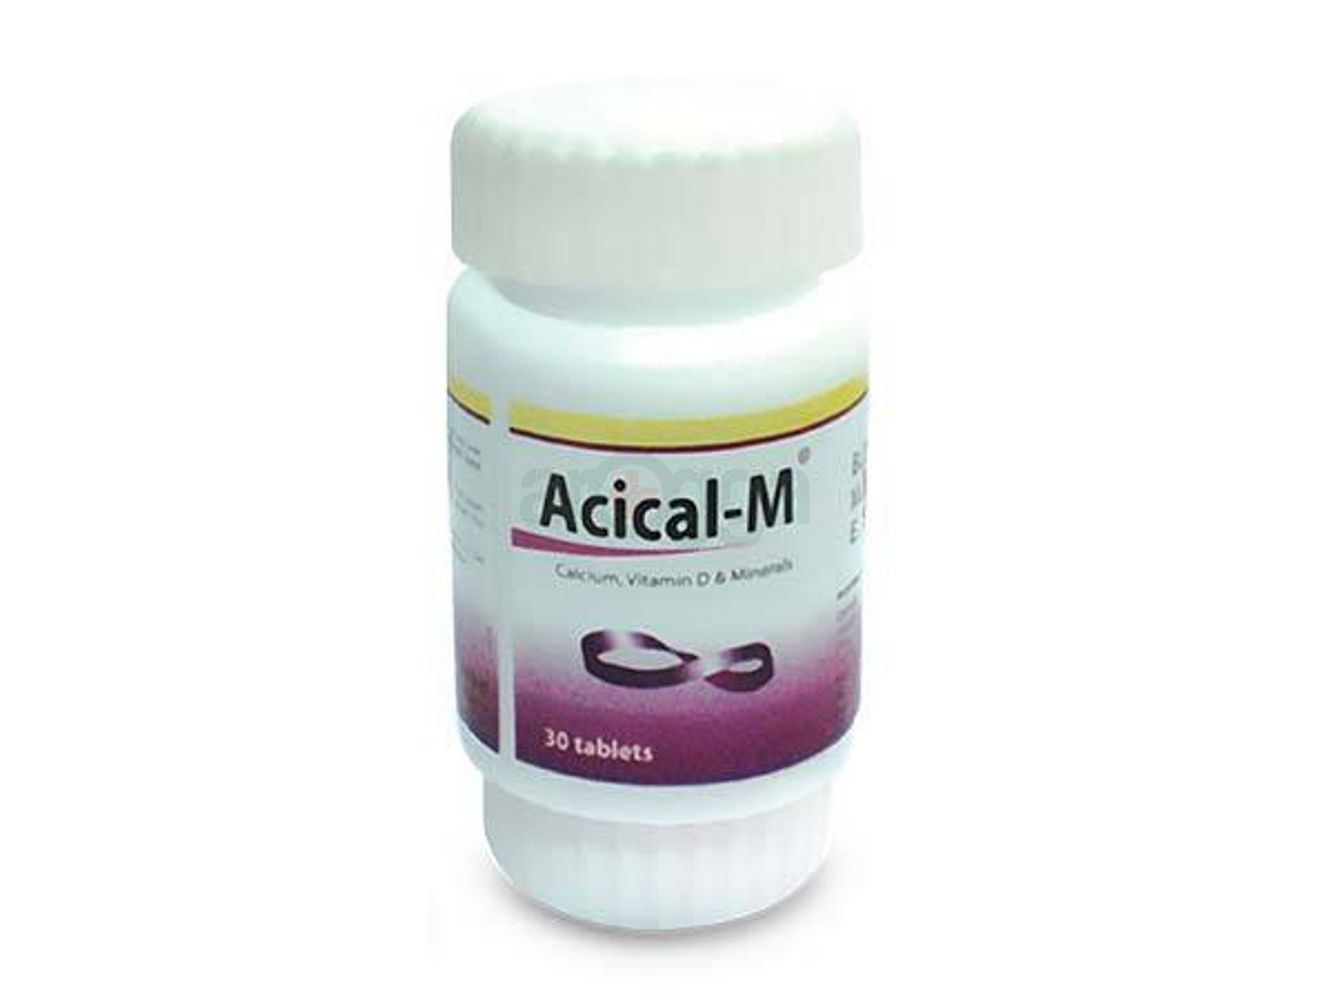 Acical-M